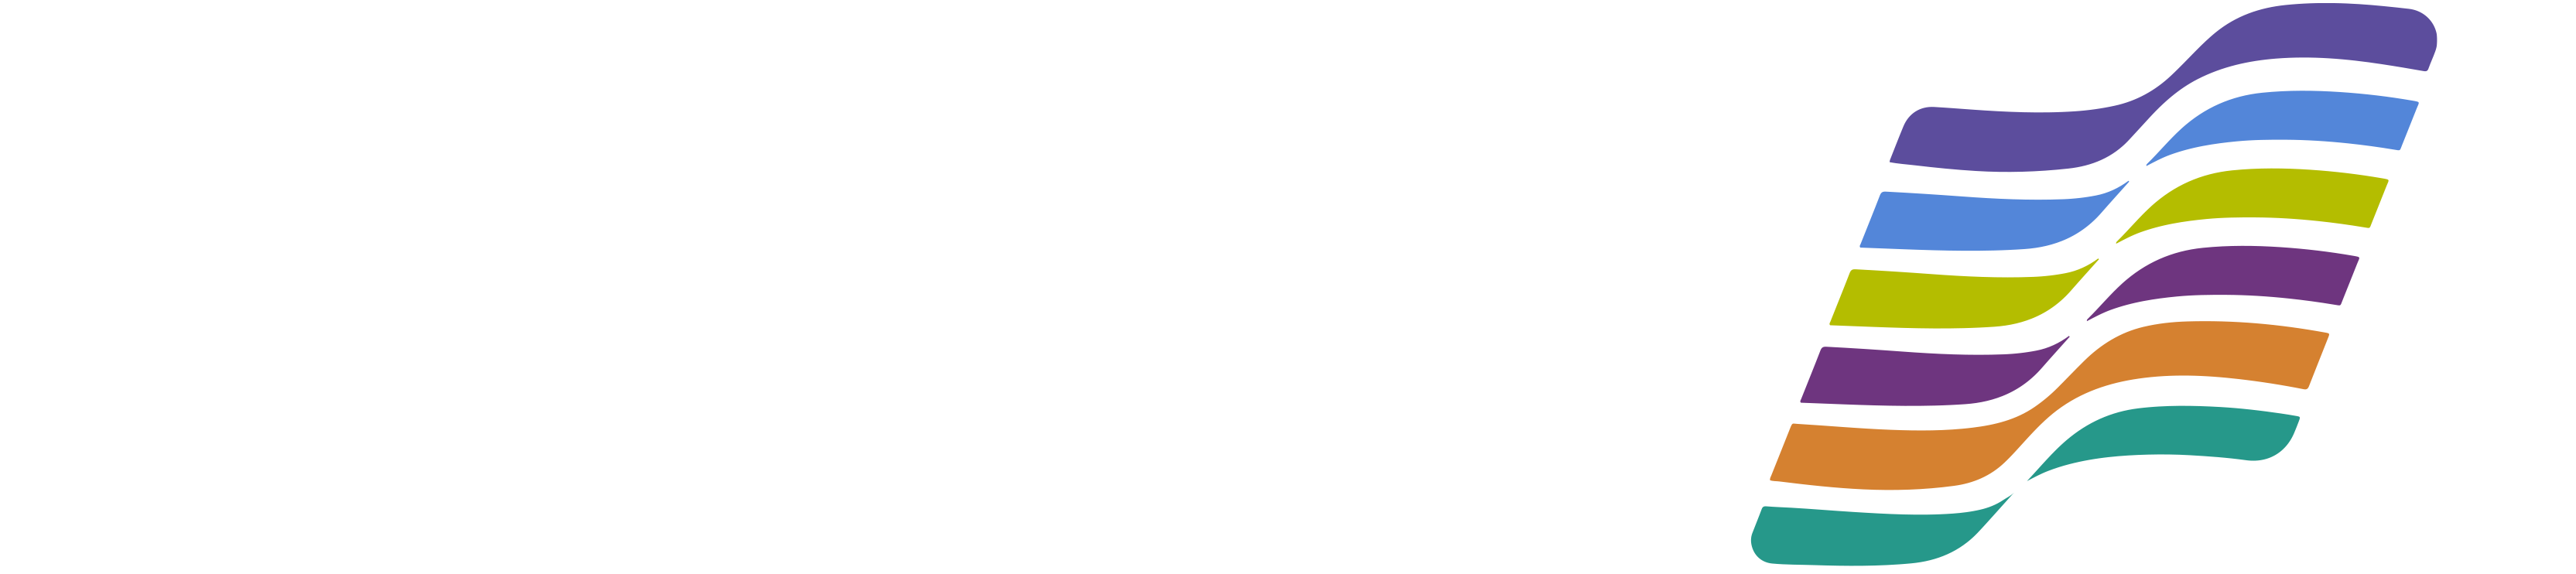 Zeal Instruments logo1